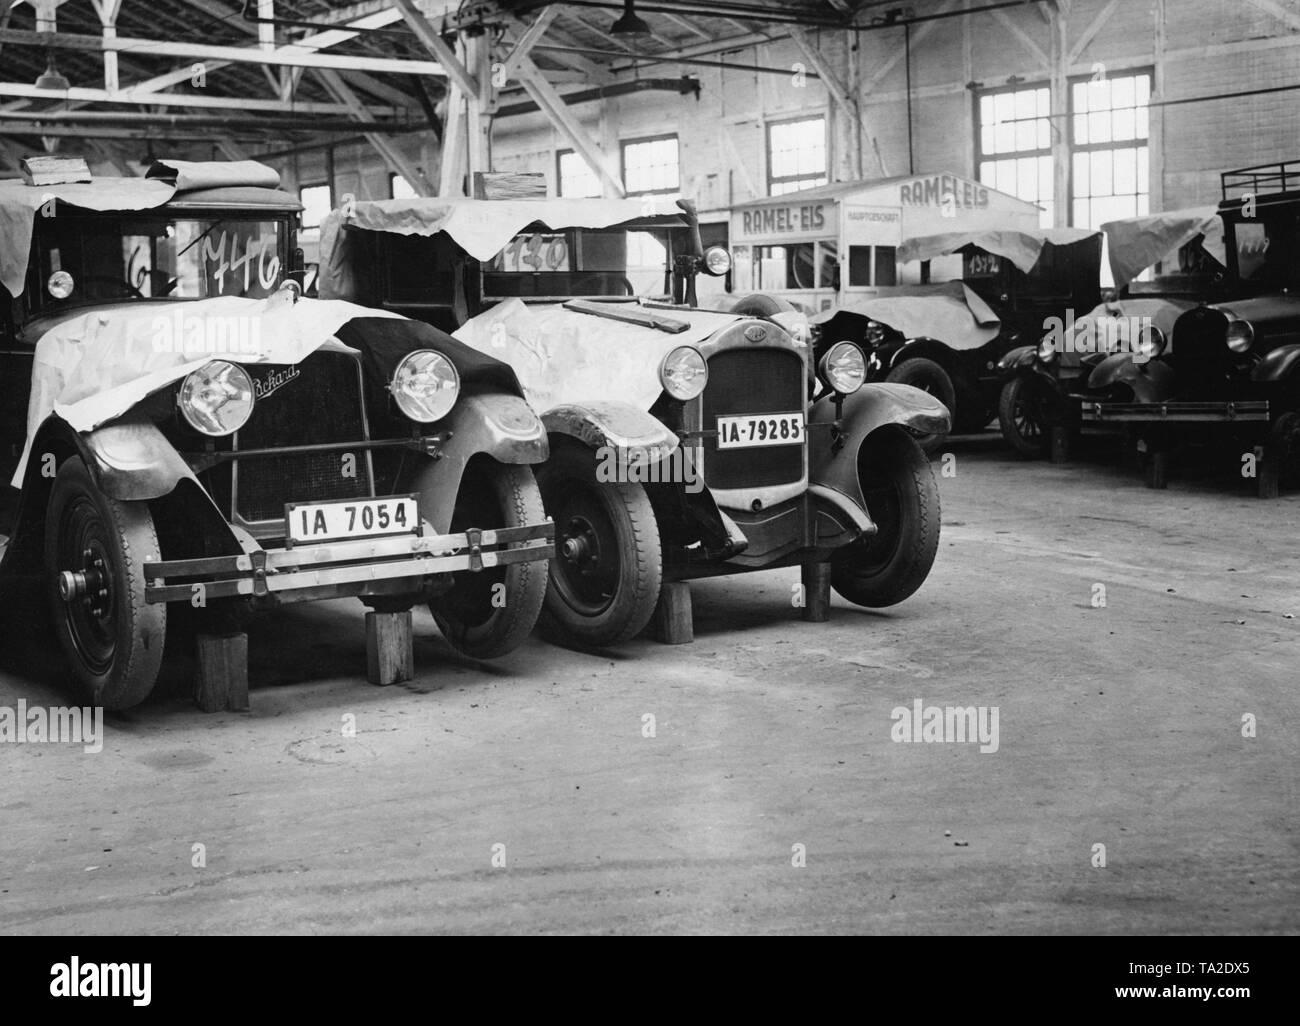 Im Krisenjahr 1932 nur in Berlin über 25.000 Autos wurden aus dem Verkehr gezogen und verlassen. Das Bild zeigt die Autowracks in den Hallen der Joannisthal Ambiwerke in Berlin. Stockfoto